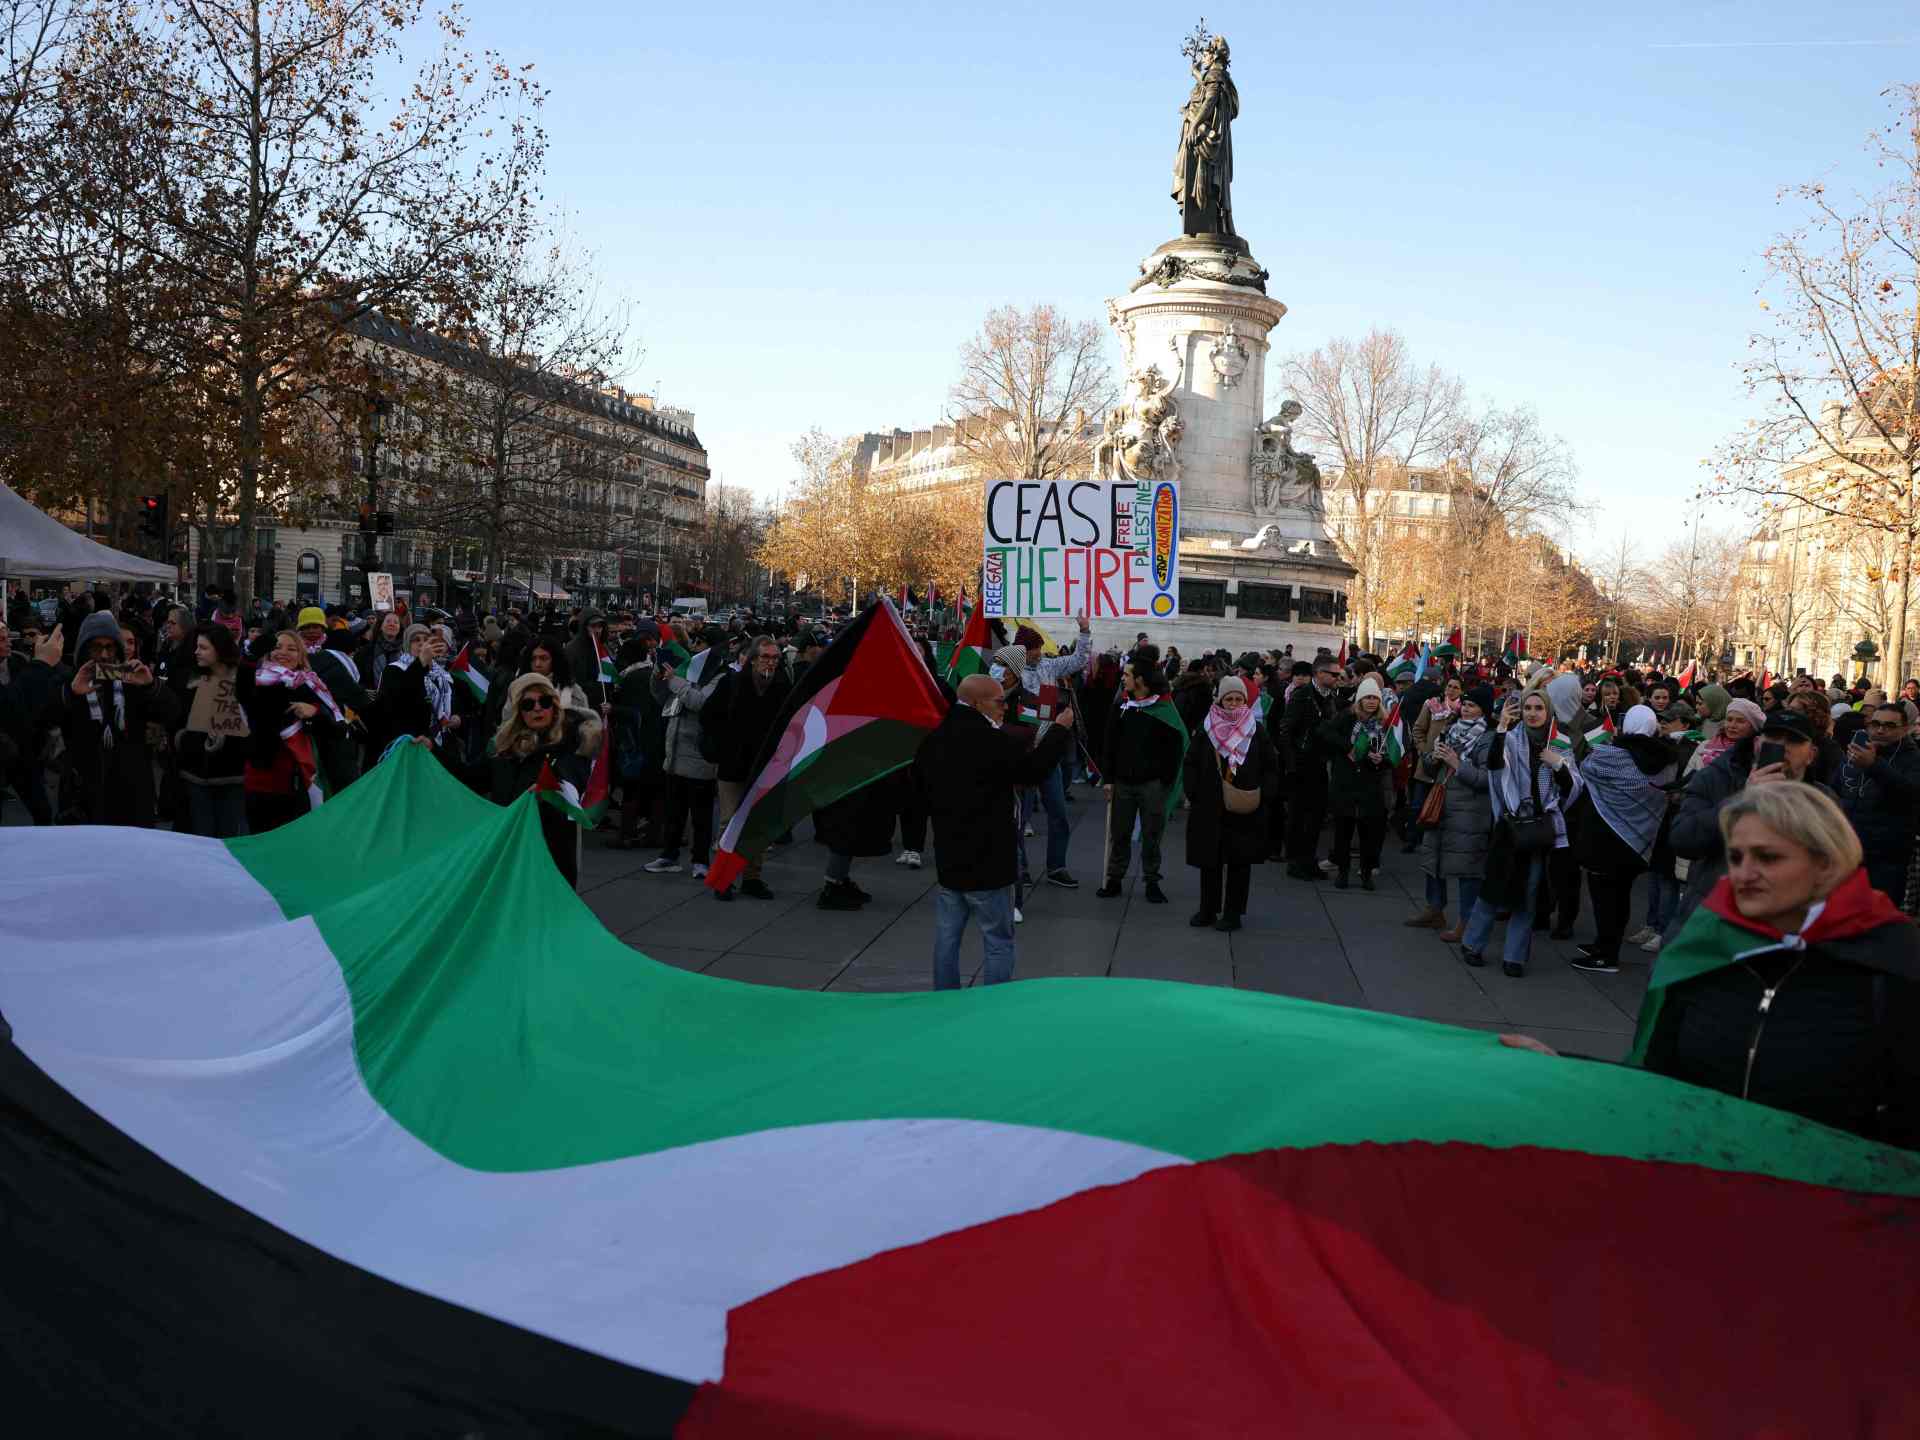 أكاديمي فرنسي: مصير أوروبا عام 2024 سيتقرر في غزة | أخبار سياسة – البوكس نيوز